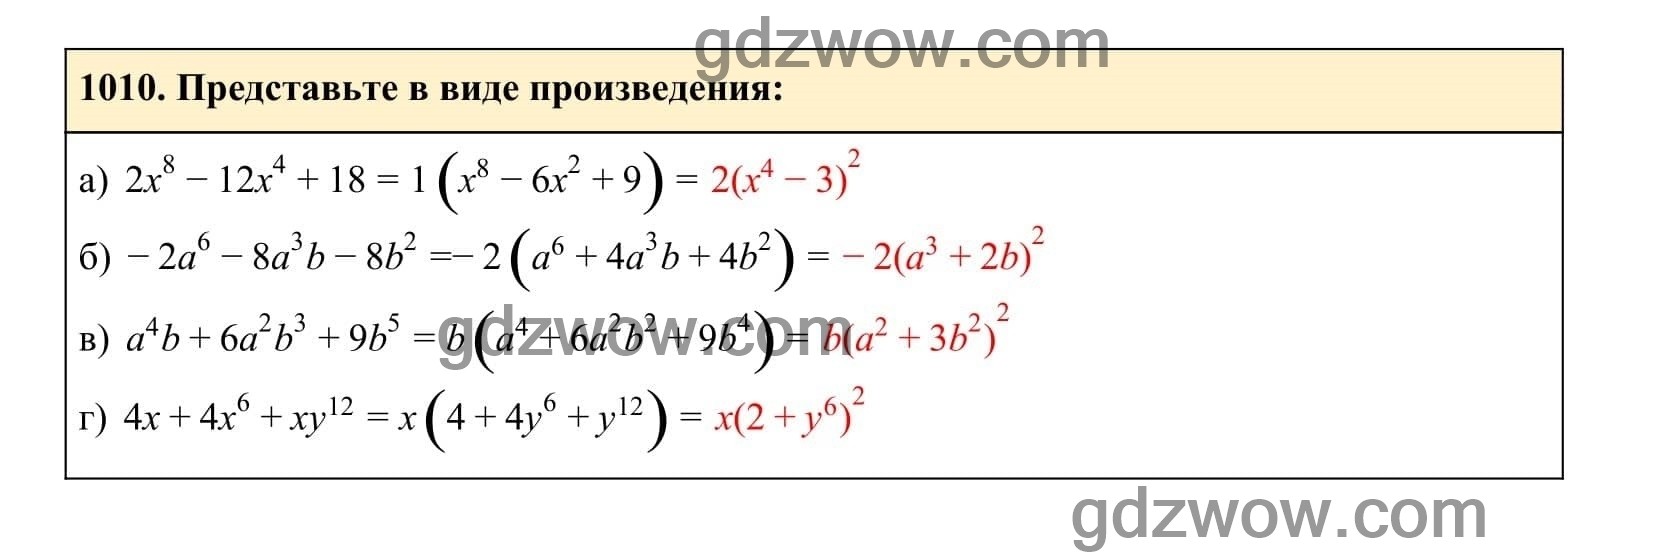 Упражнение 1010 - ГДЗ по Алгебре 7 класс Учебник Макарычев (решебник) - GDZwow